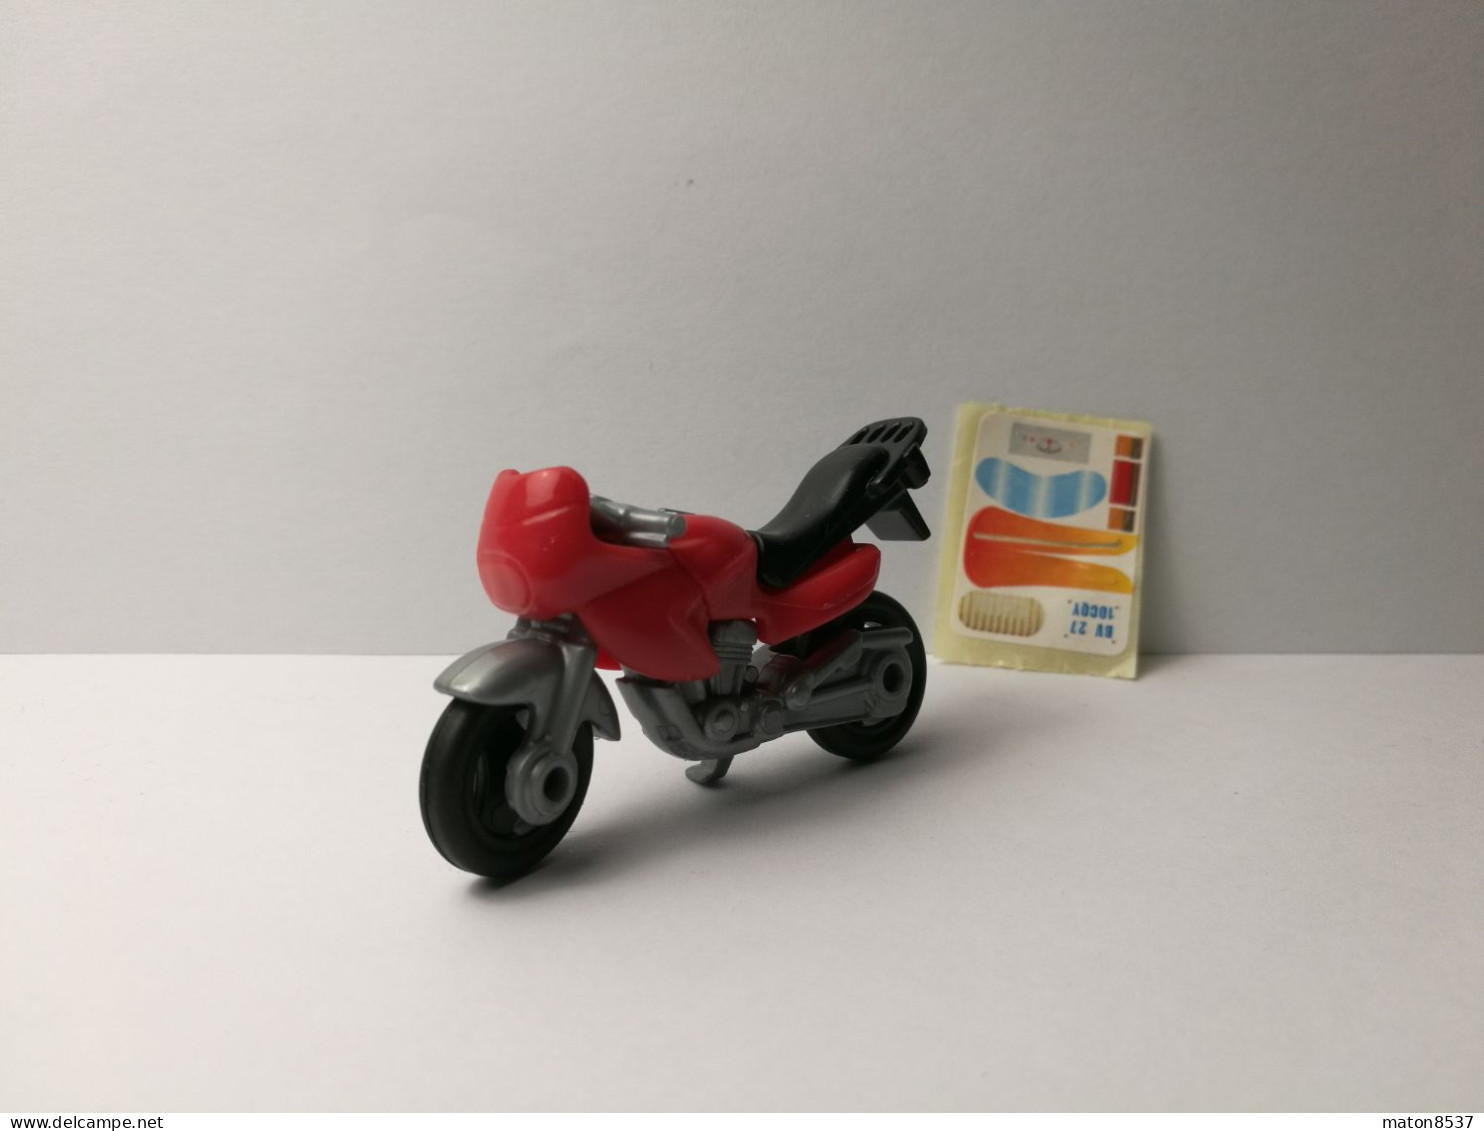 Kinder :  K04 N20  Motorräder 2003 - Modell 2  + Aufkleber - Mountables